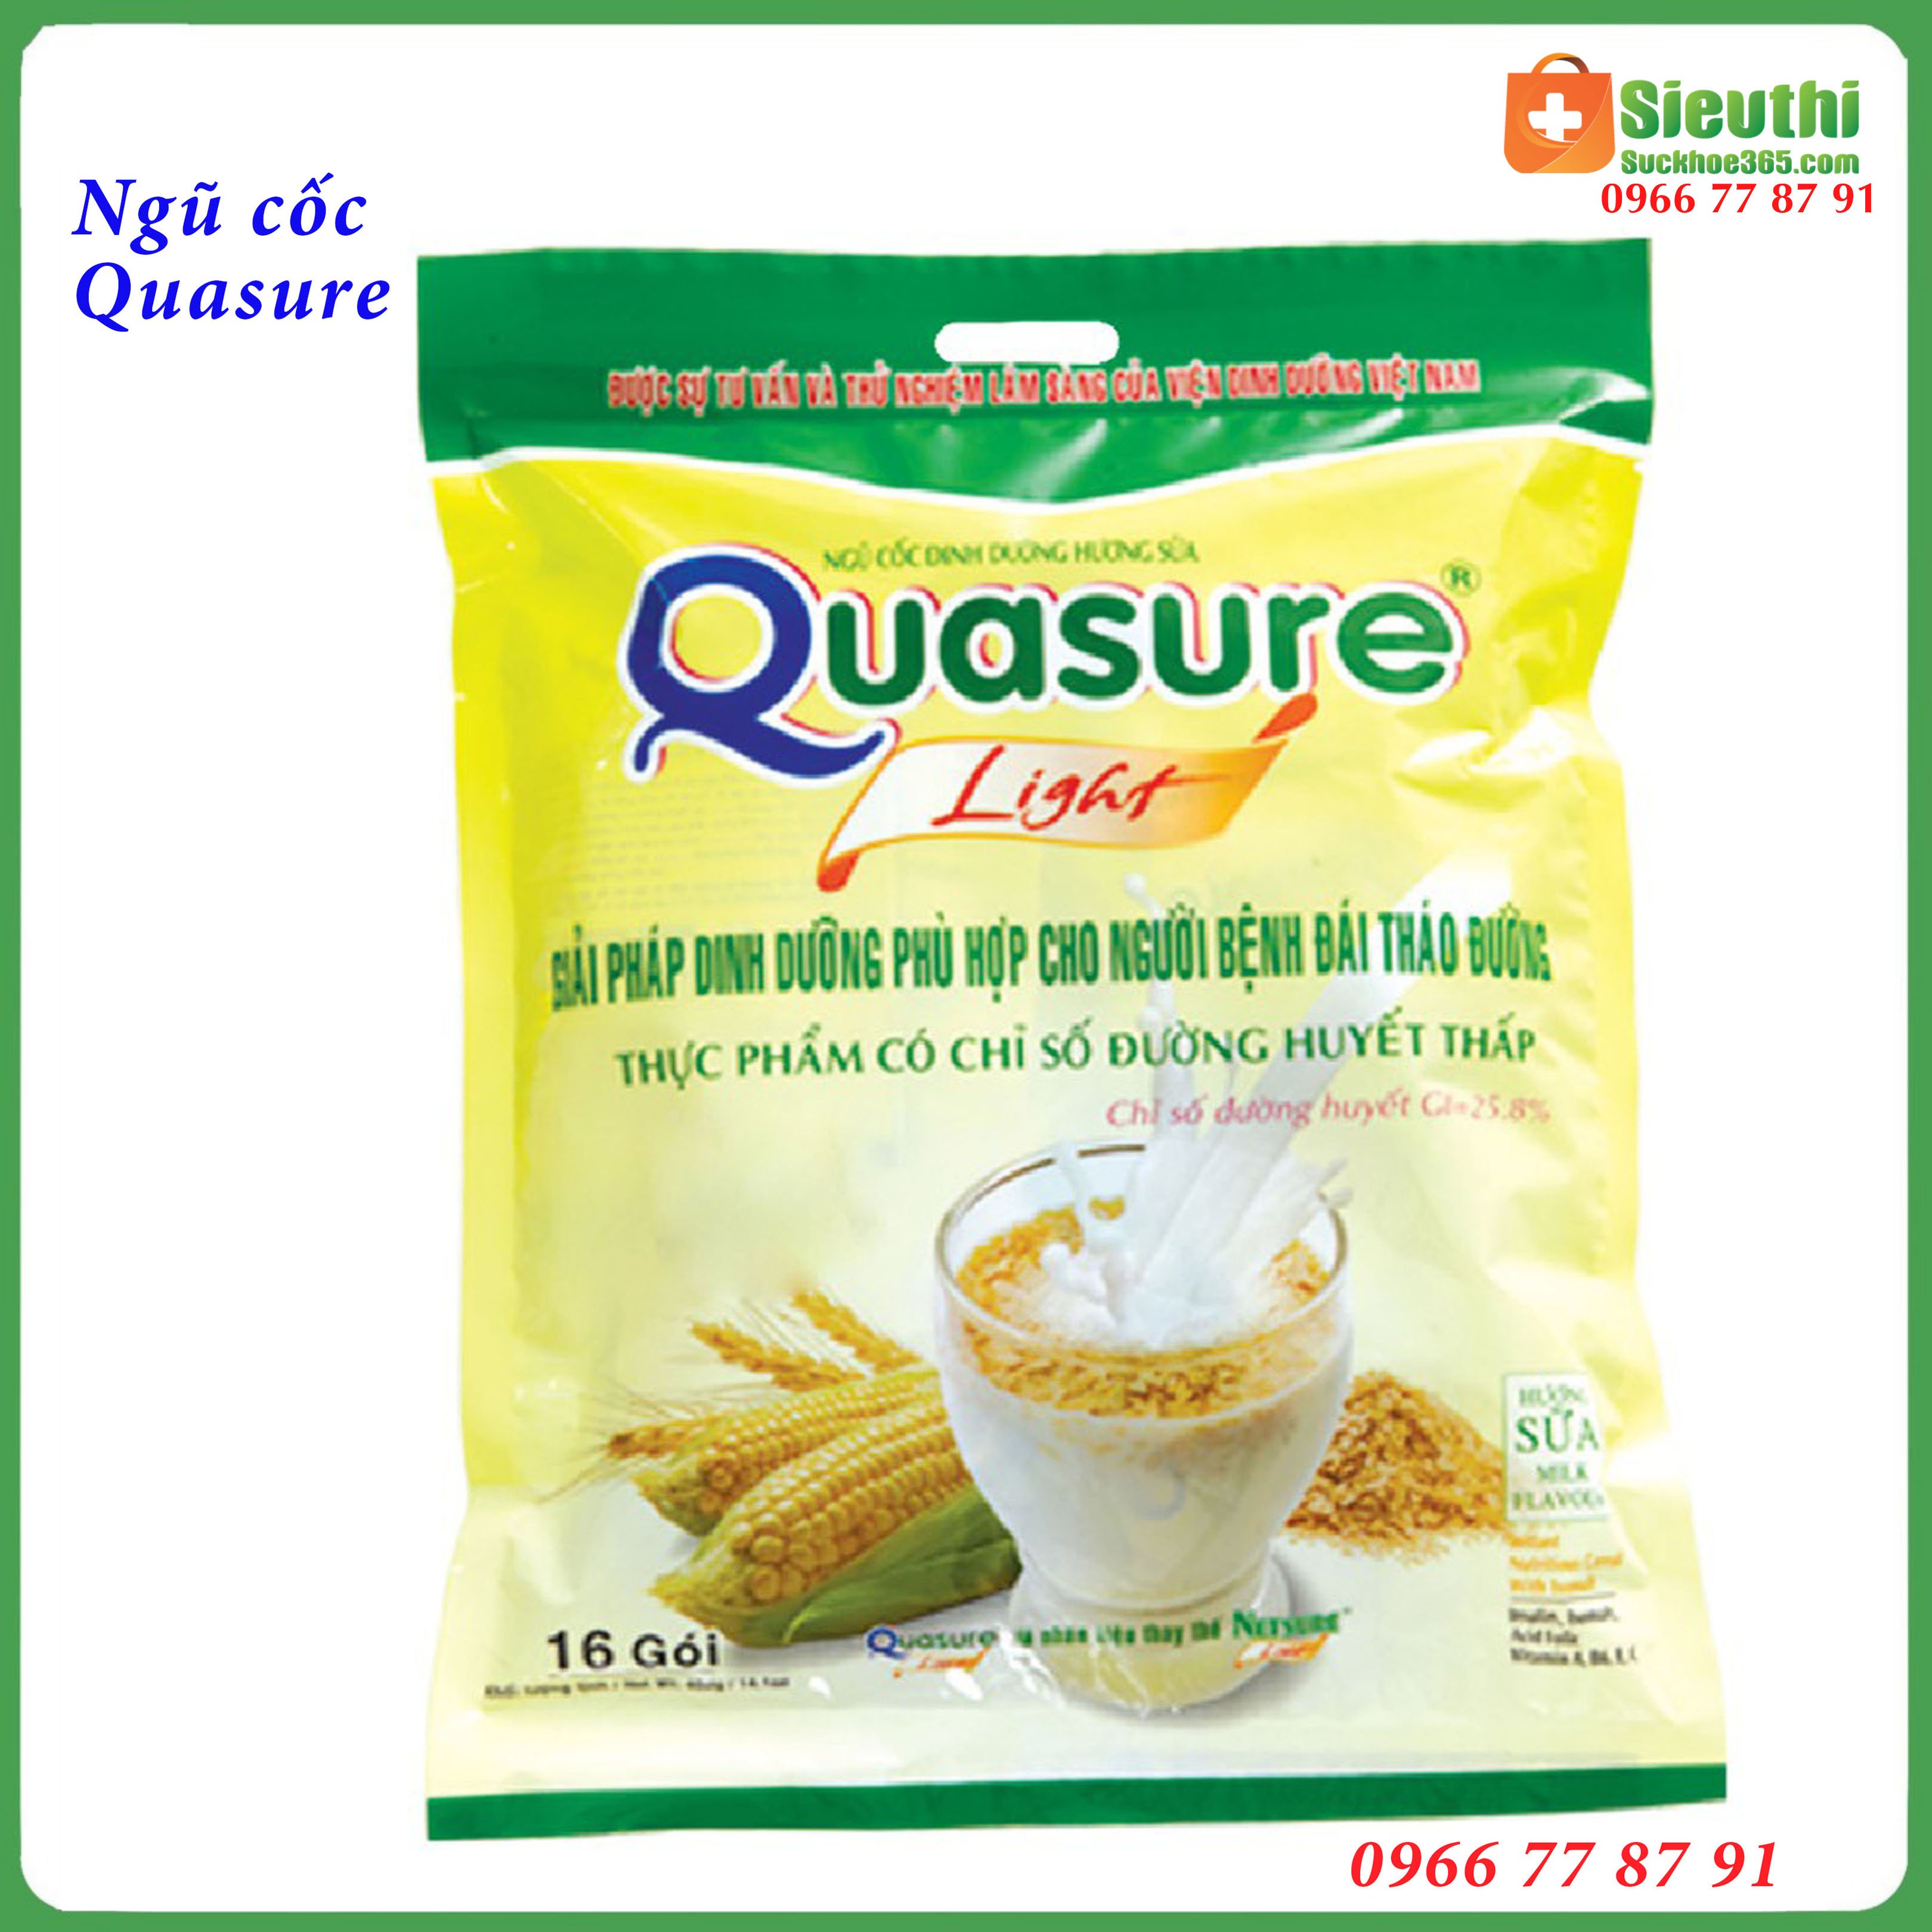 Bột ngũ cốc Quasure Light bịch 400g dành cho người tiểu đường ăn kiêng